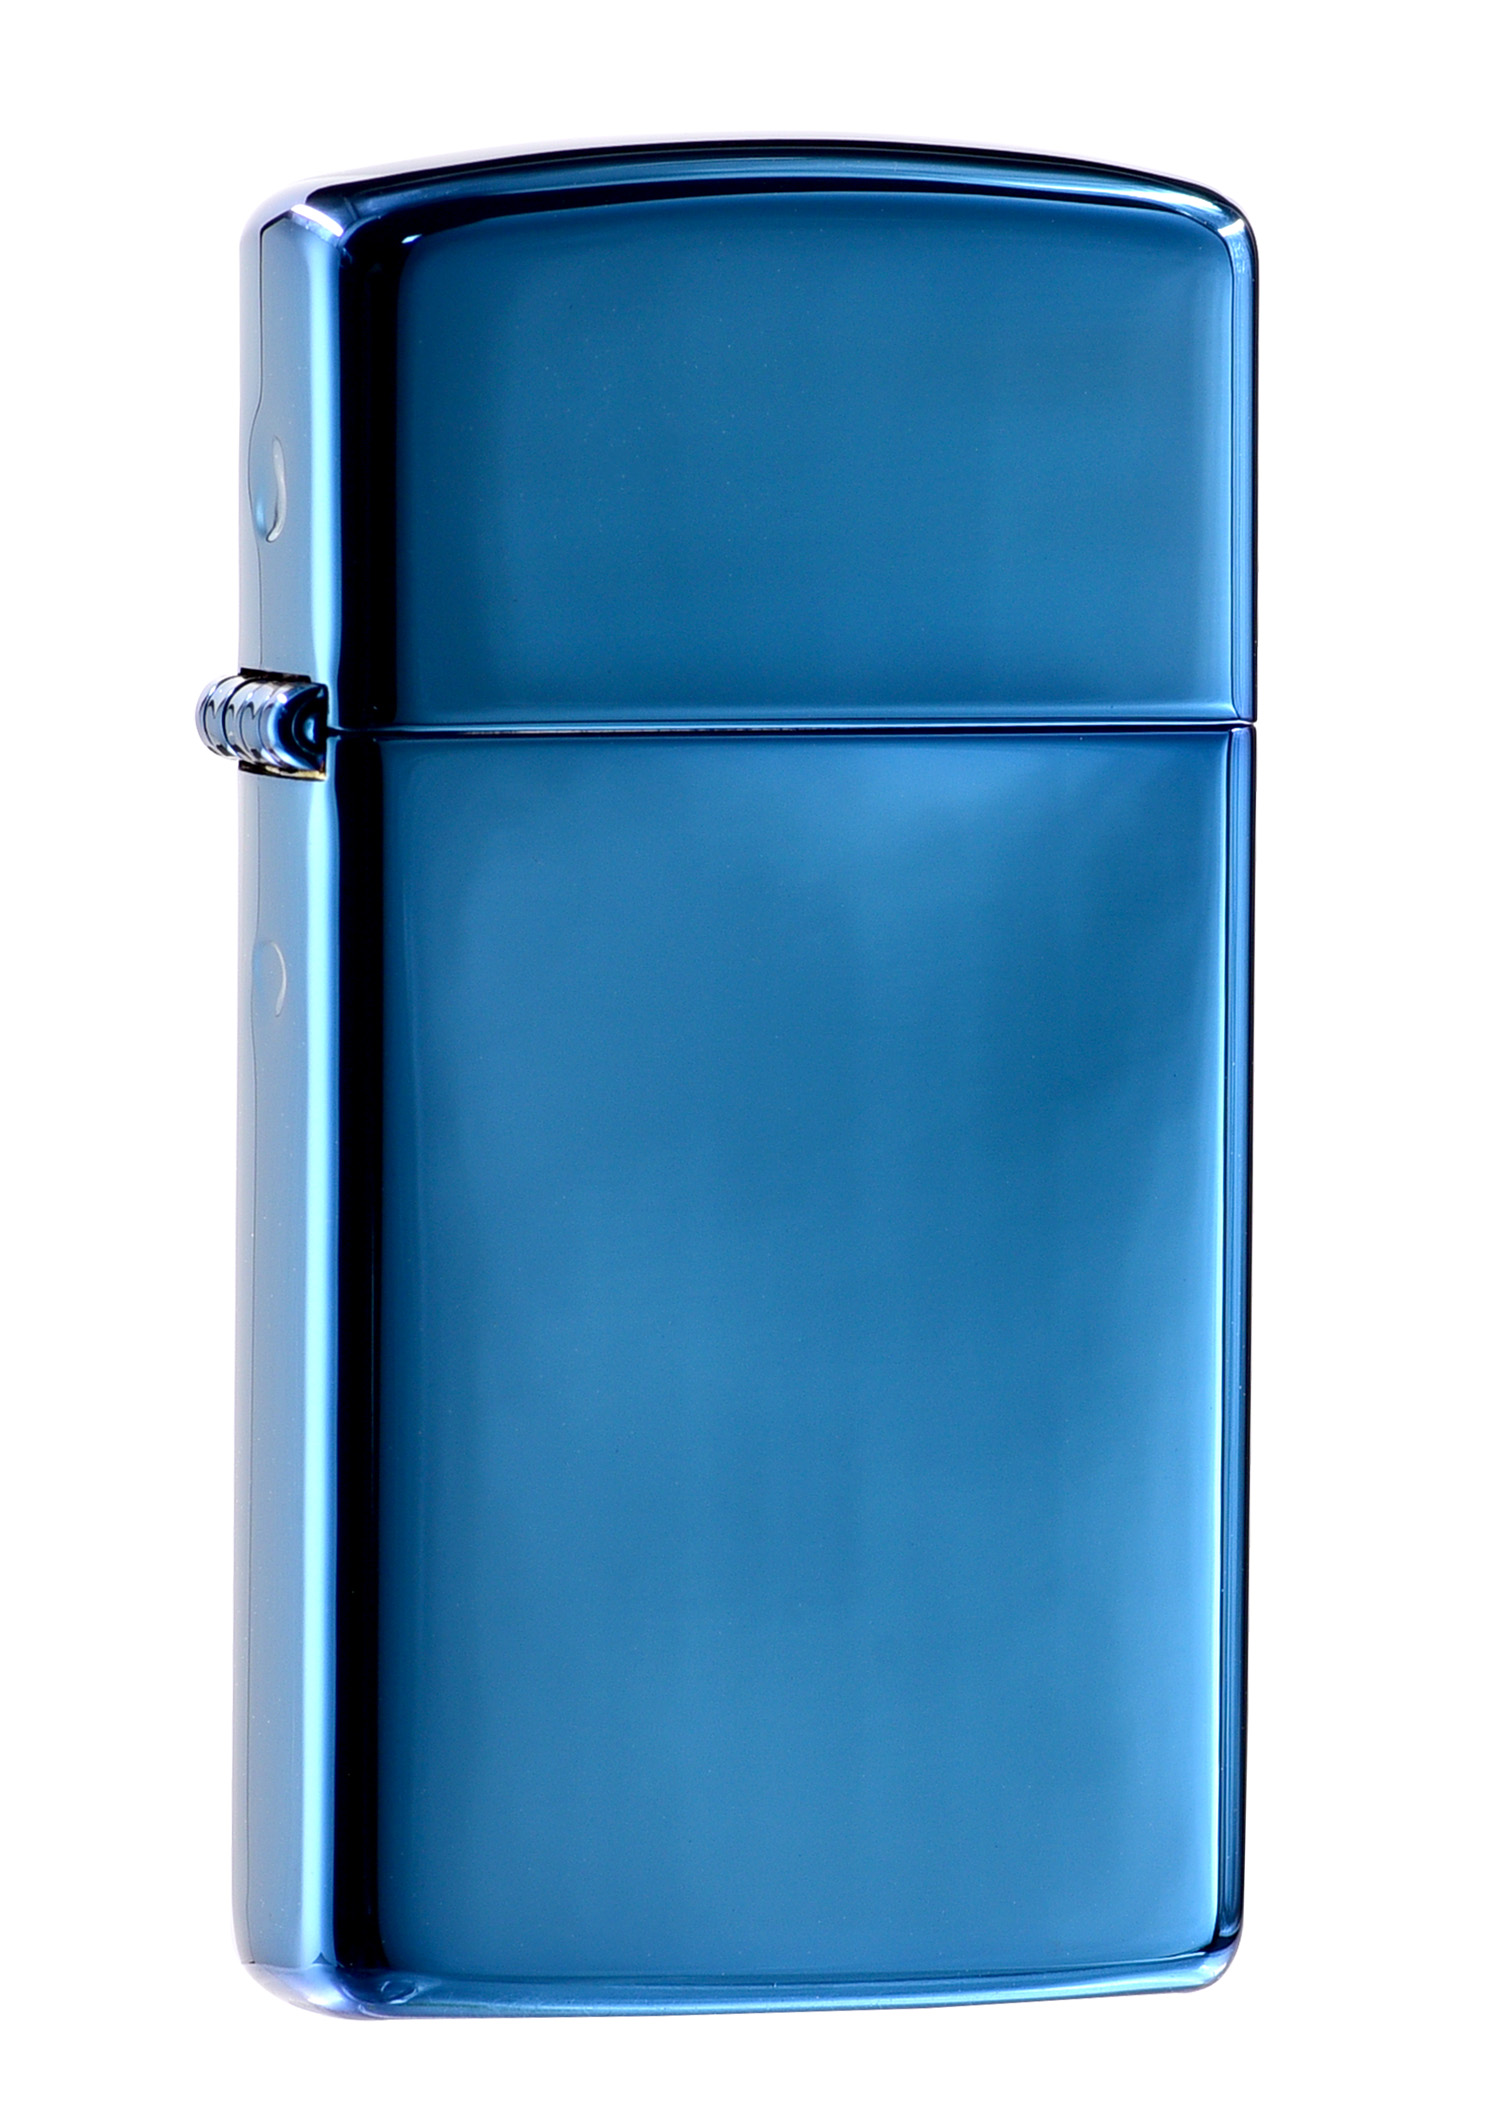 20494 窄版藍冰(素面)防風打火機